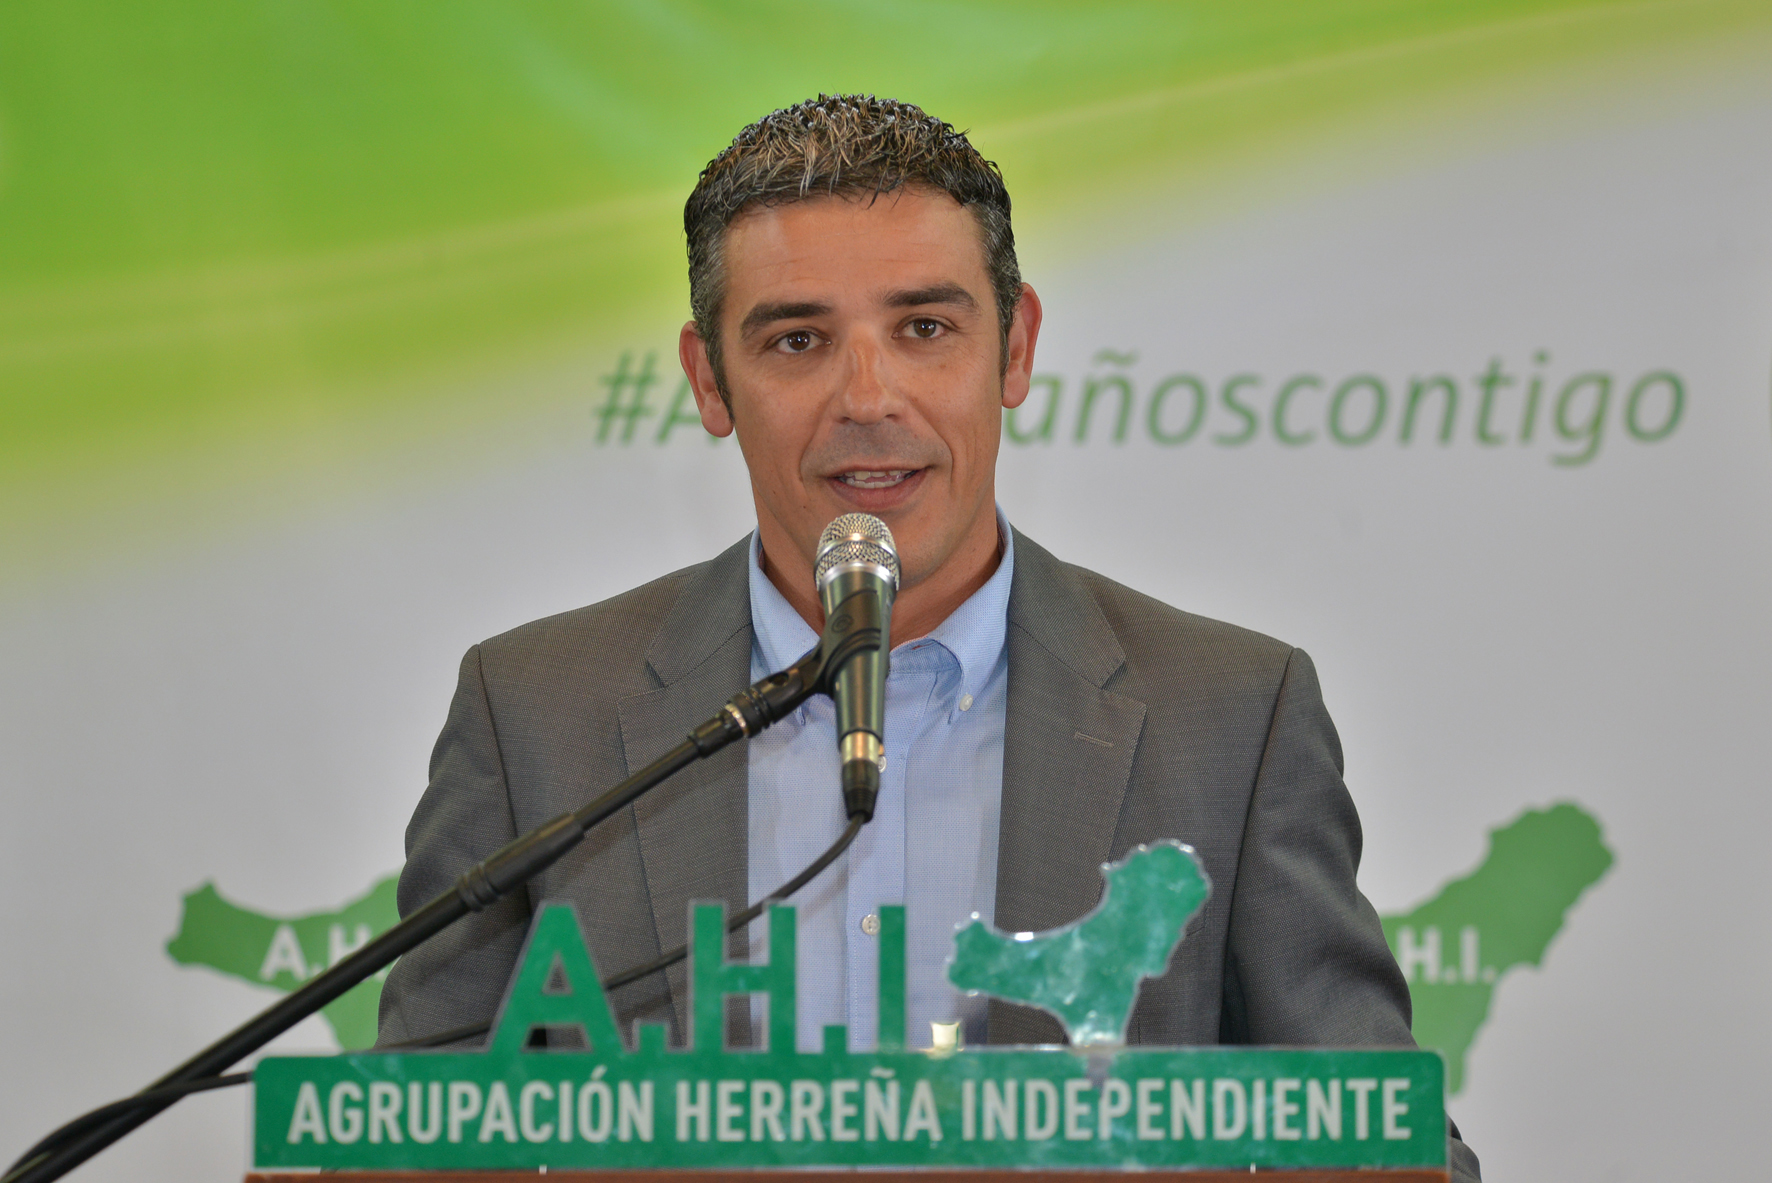 AHI culpa a Gobierno y Cabildo de no crear nuevas plazas de atención sociosanitarias en El Hierro